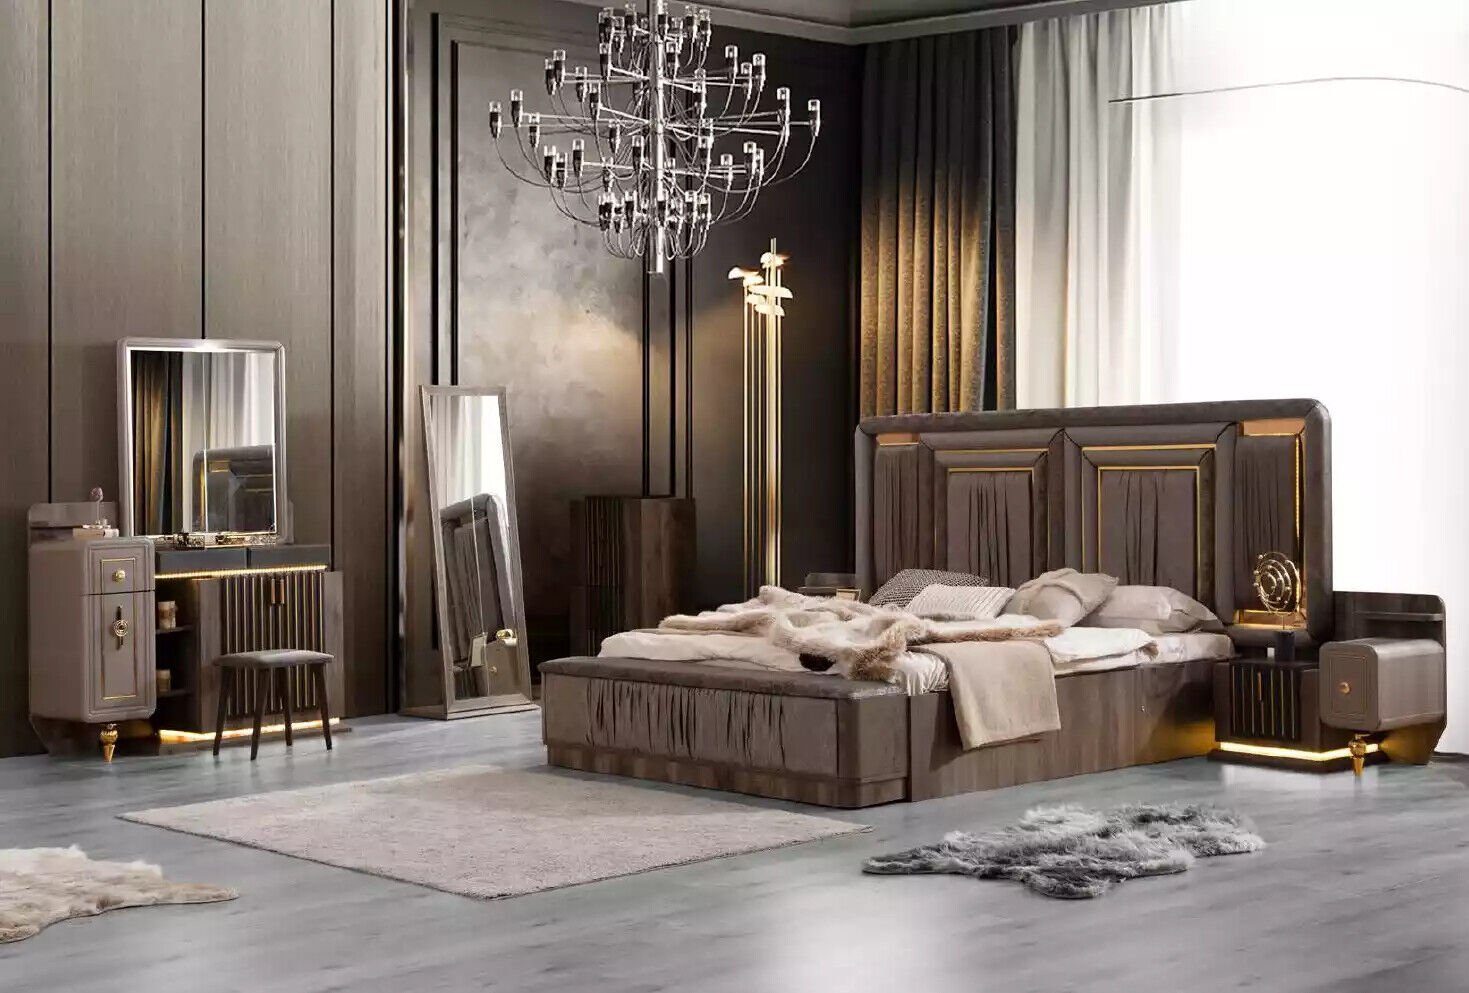 JVmoebel Schlafzimmer-Set Doppelbett Garnitur Schlafzimmer Luxus Bett Modern Grau Design, (6-St., Bett/Bank/2x Nachttische/Schminktisch/Bodenspiegel), Made in Europa